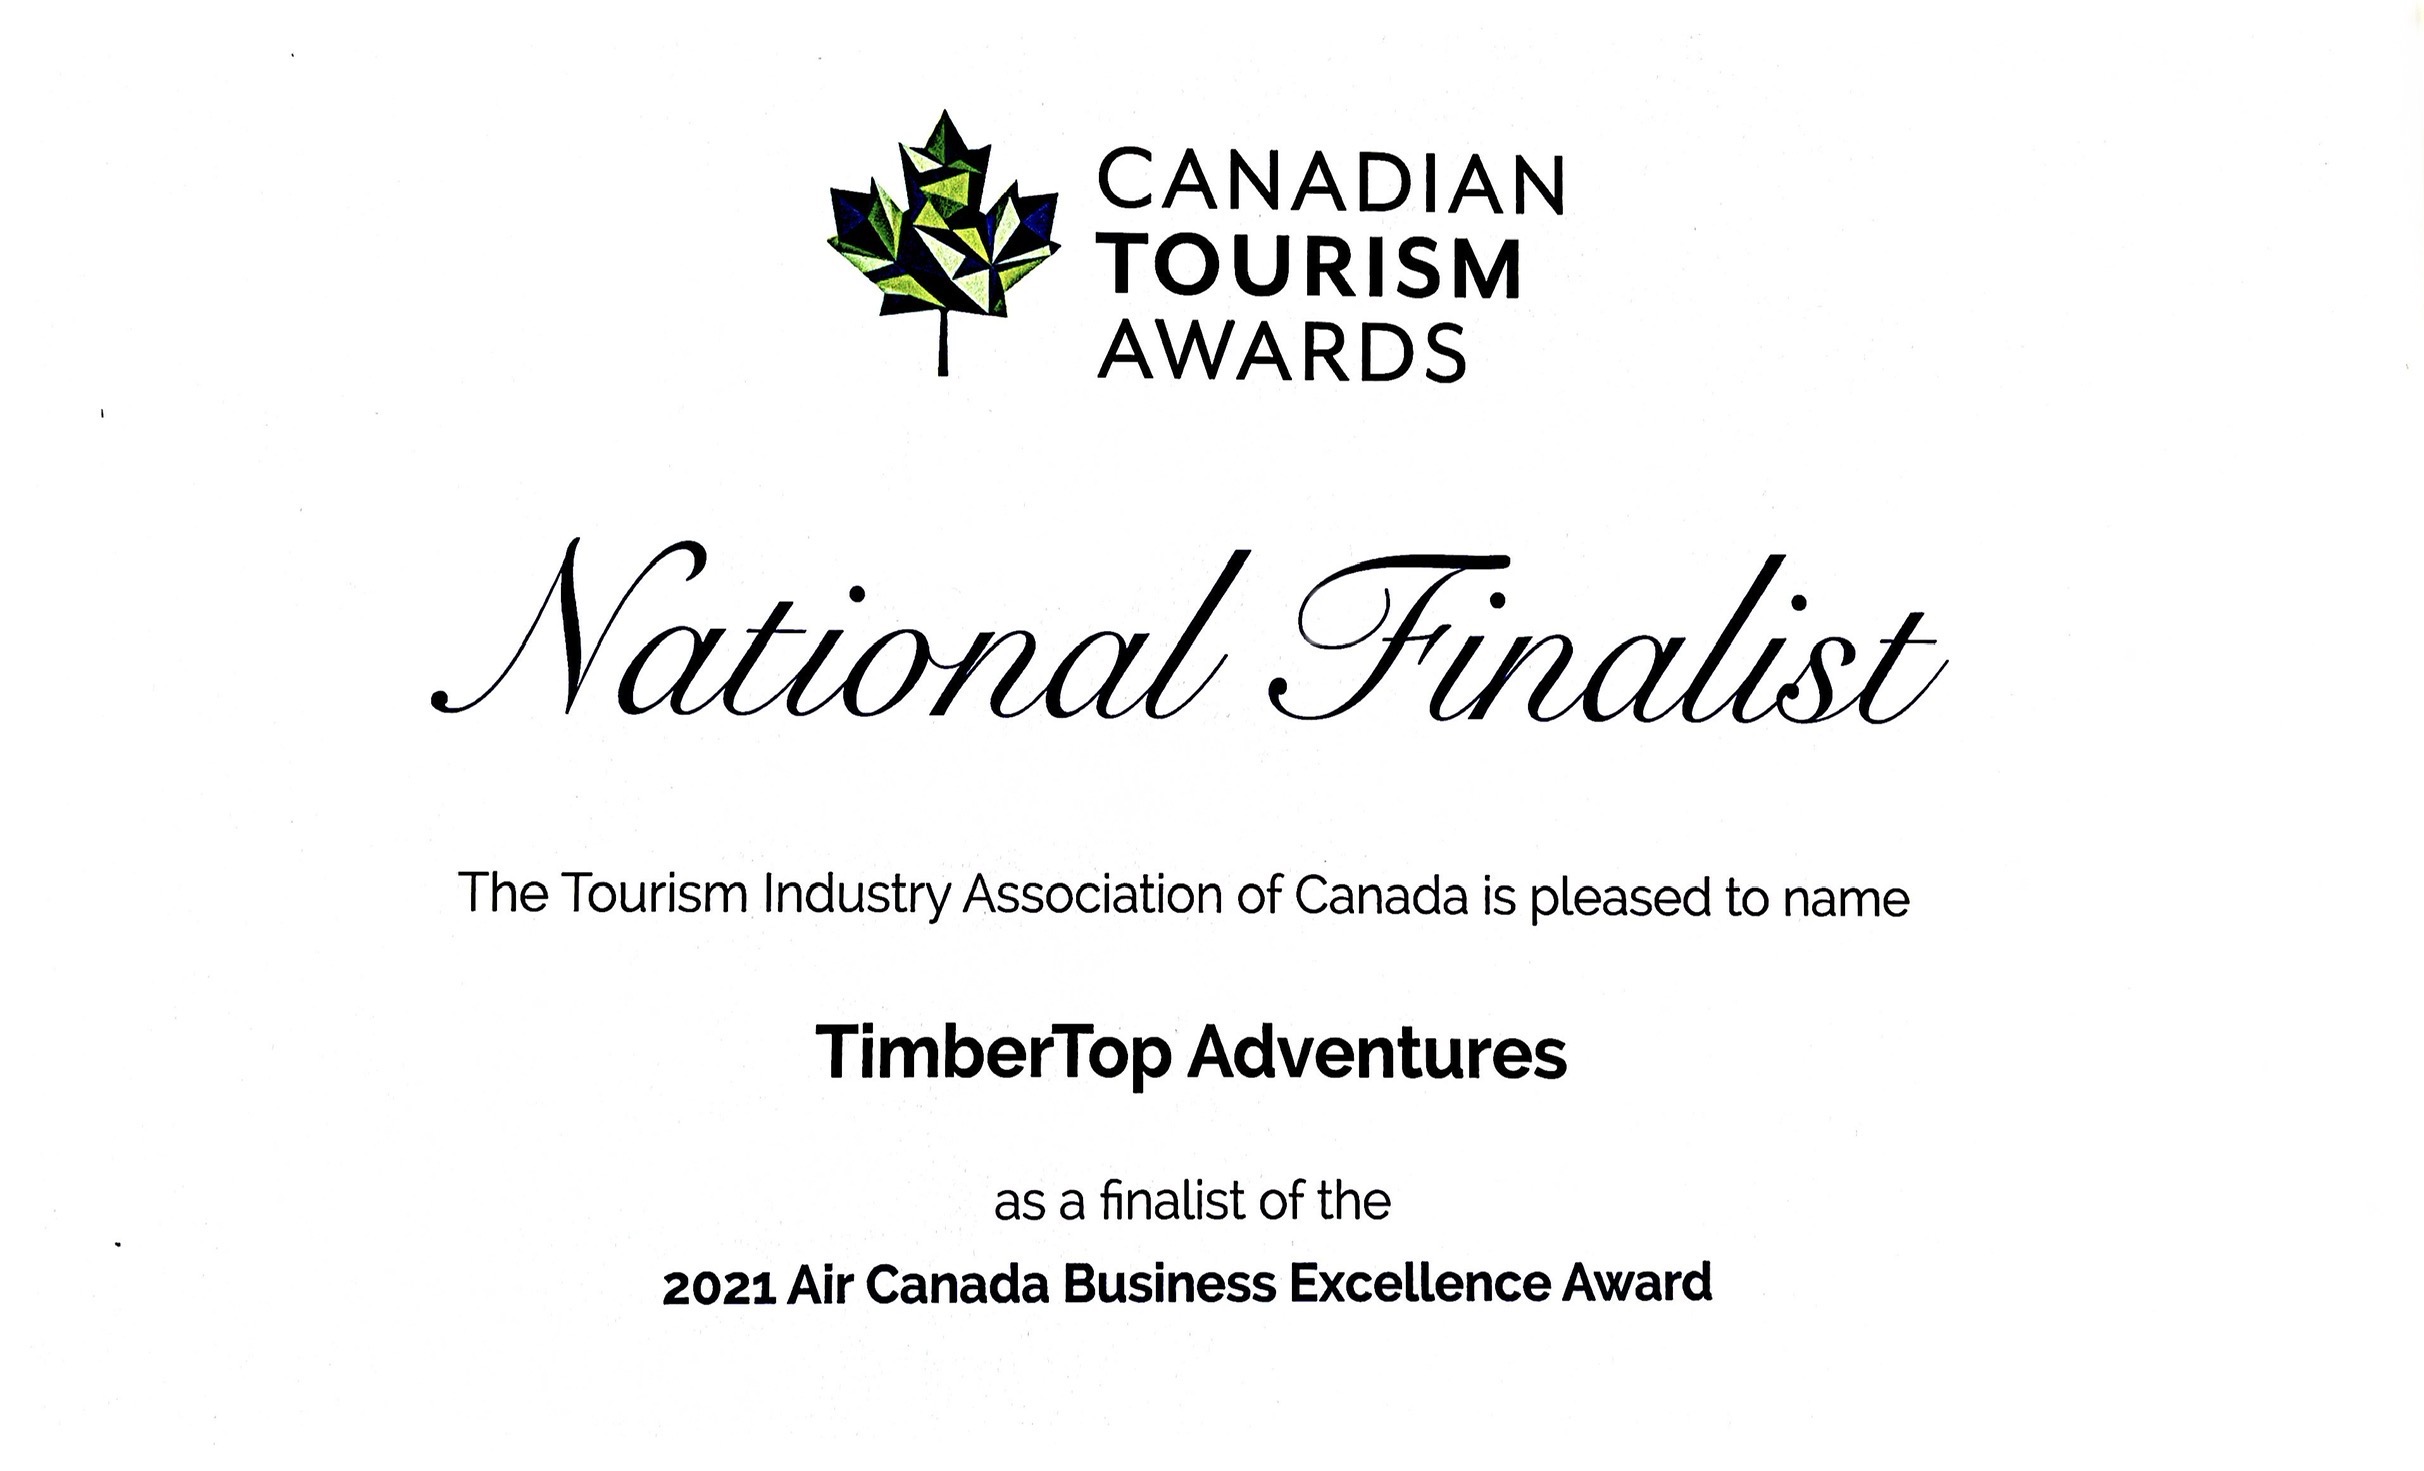 2021年加拿大旅游奖入围名单